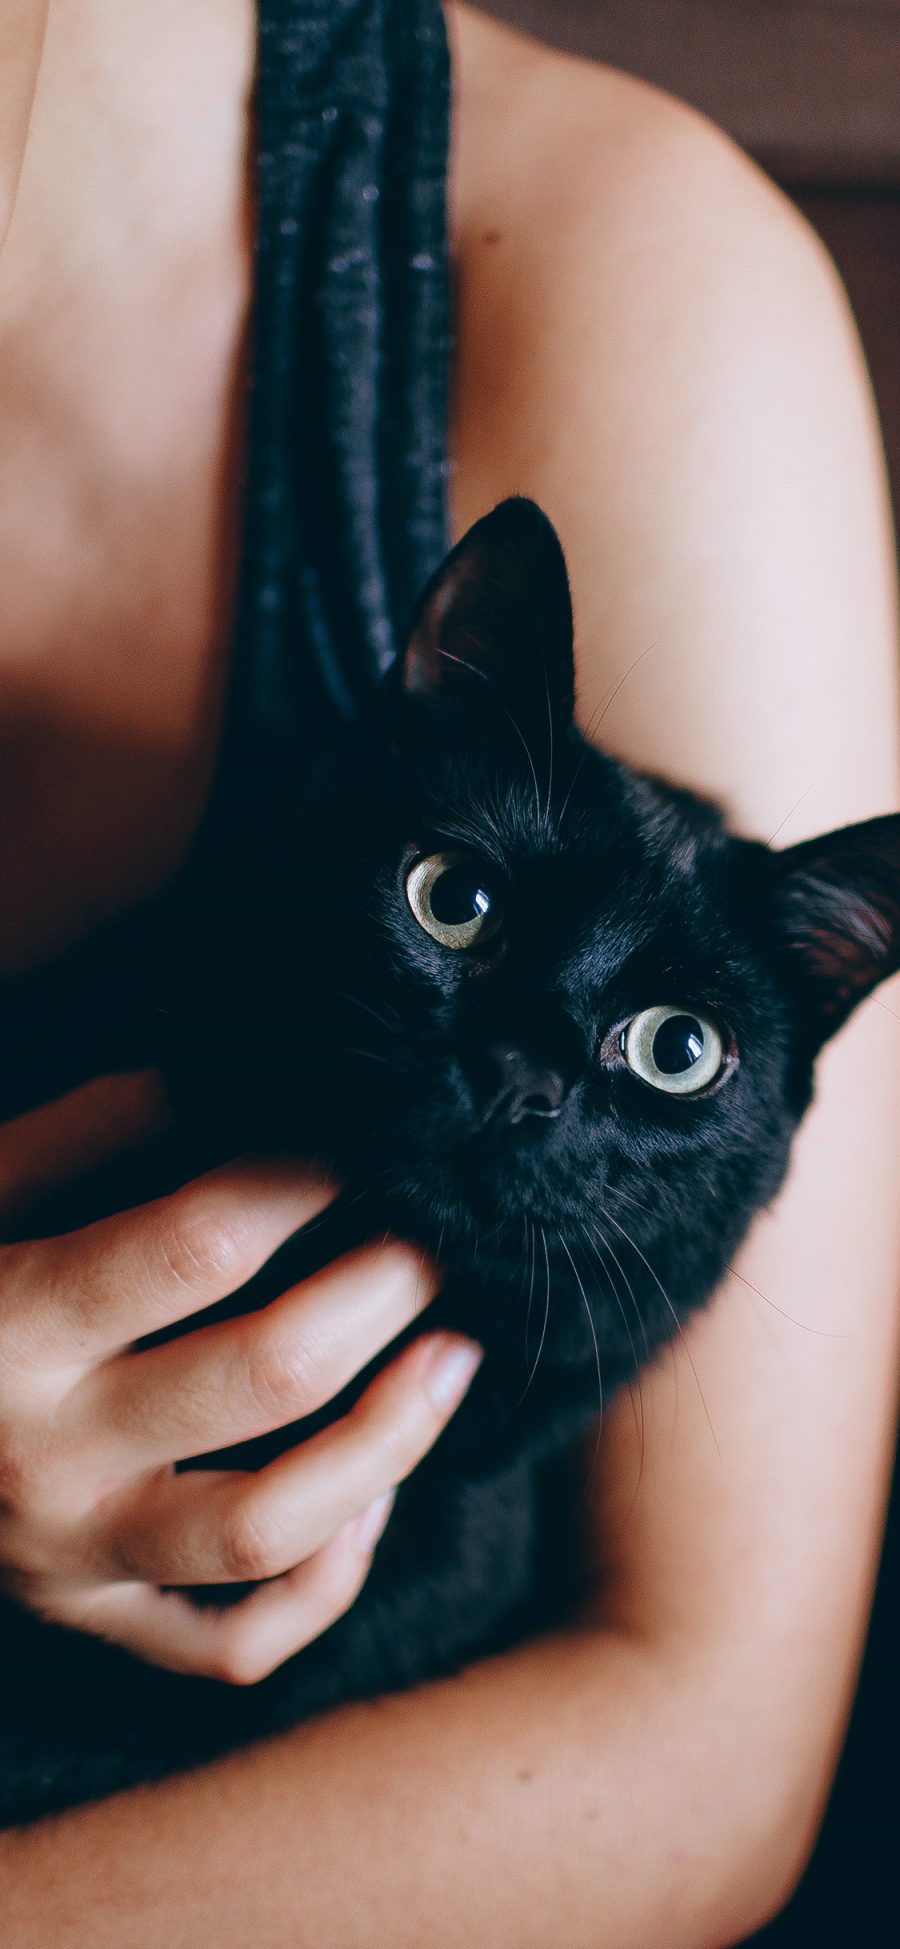 [2436×1125]黑猫 宠物 猫咪 喵星人 手 抚摸 苹果手机壁纸图片